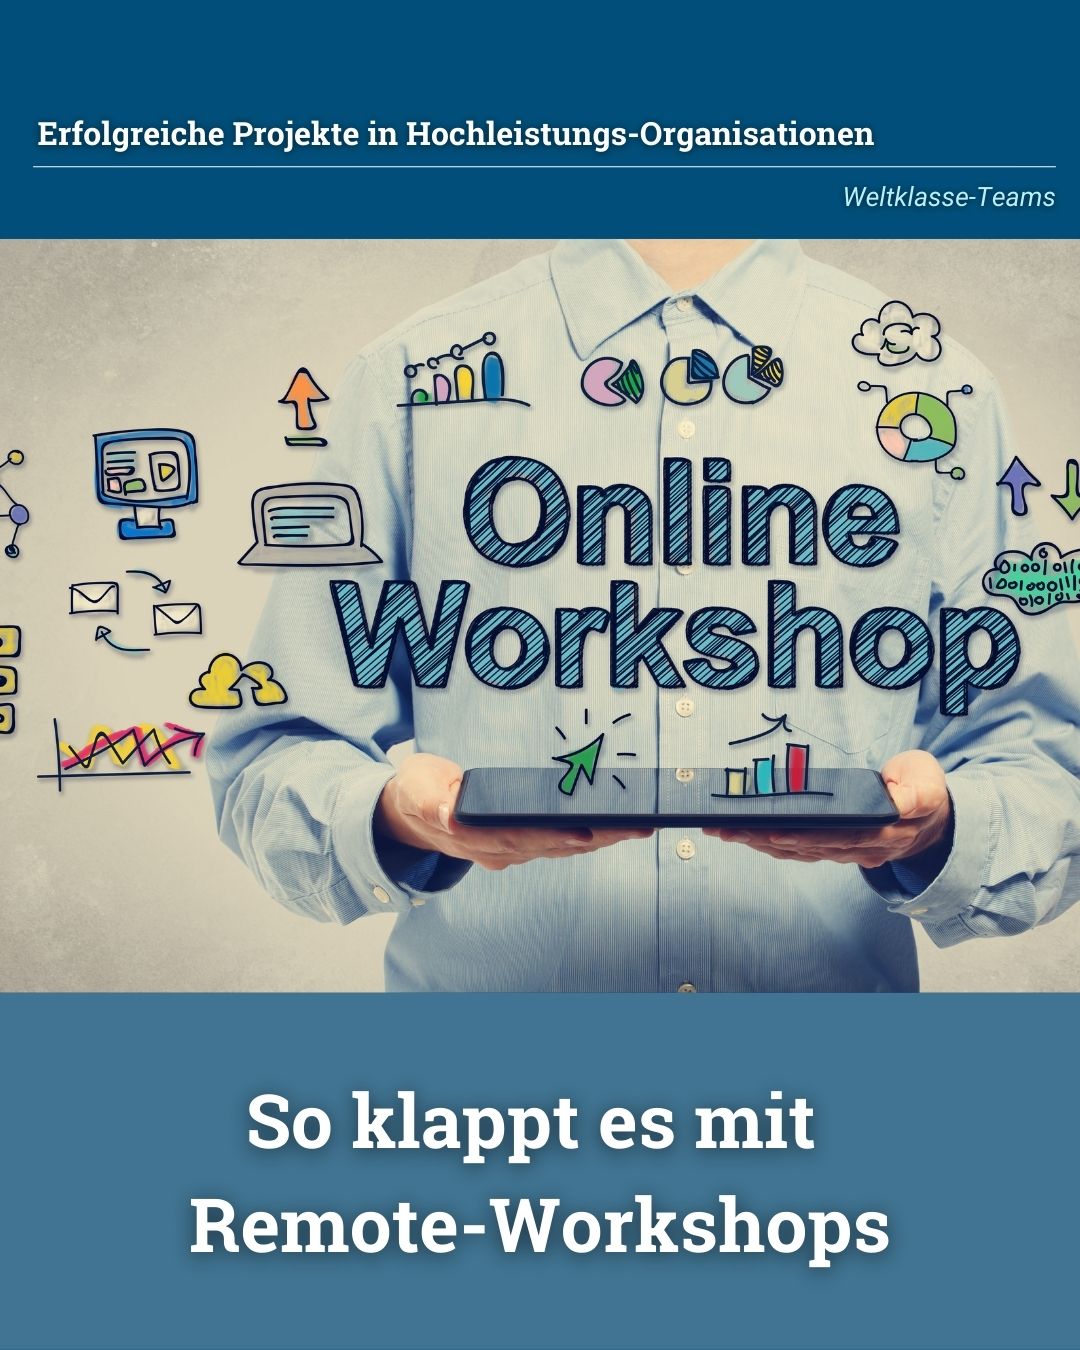 So klappt es mit Online- und Remote-Workshops - von Klaus Nitsche - 1